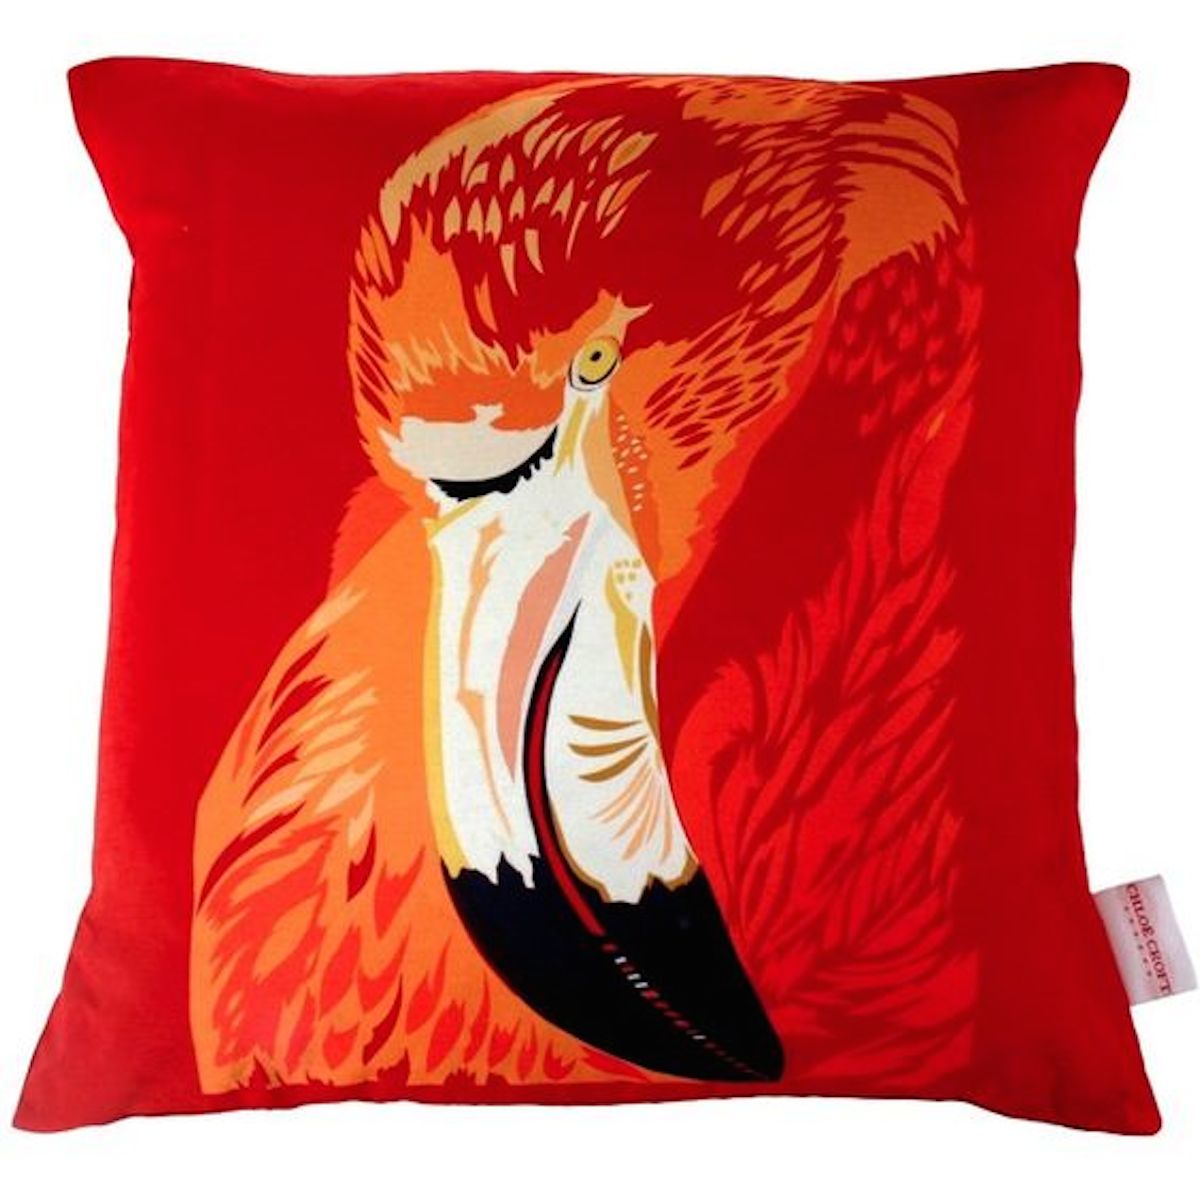 Flame Flamingo Cushion